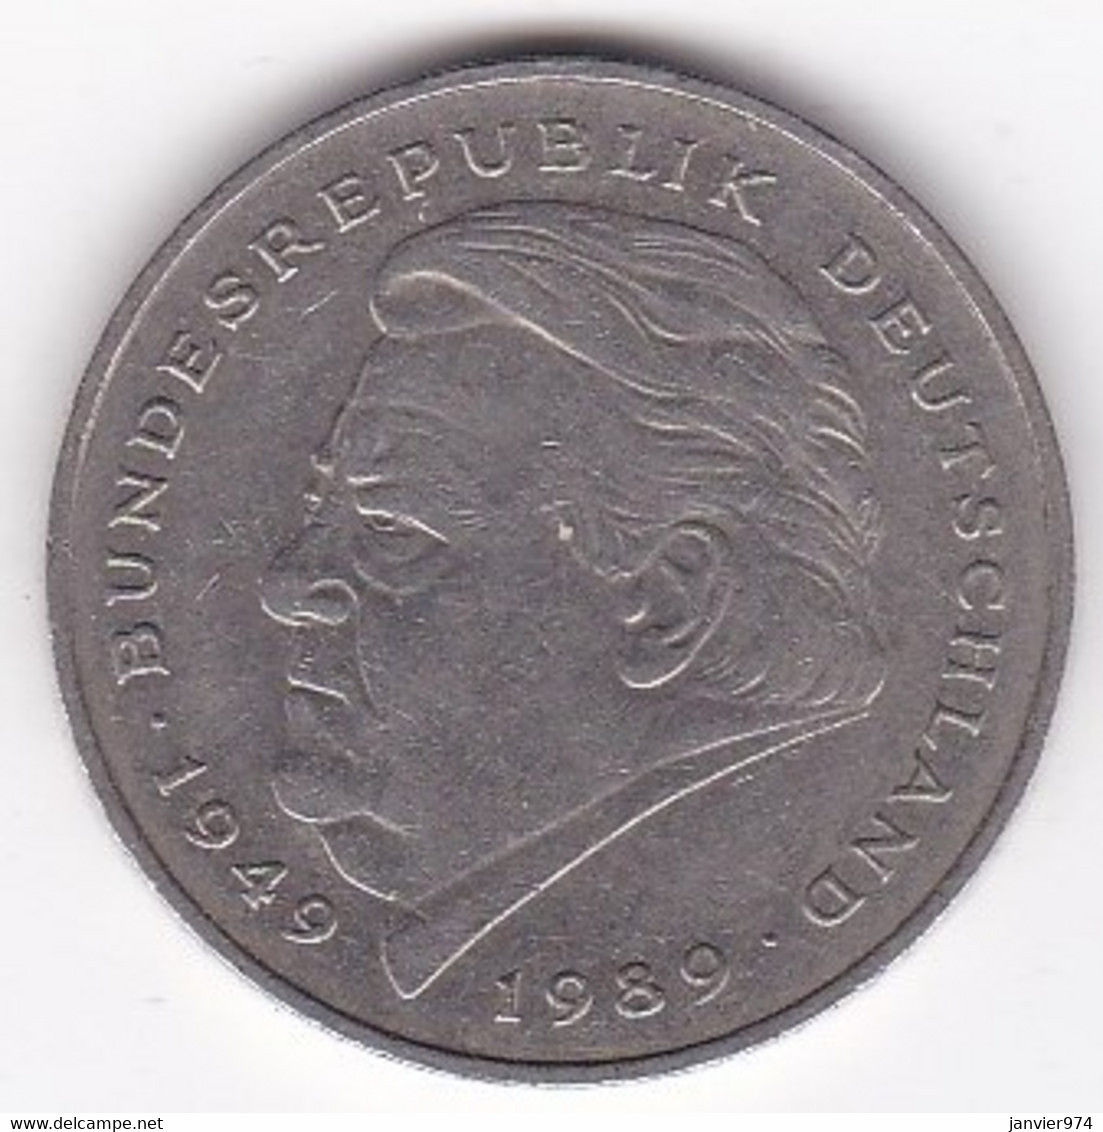 2 Deutsche Mark 1990 D Munich, Franz Josef Strauss ,KM# 175 - 2 Marchi